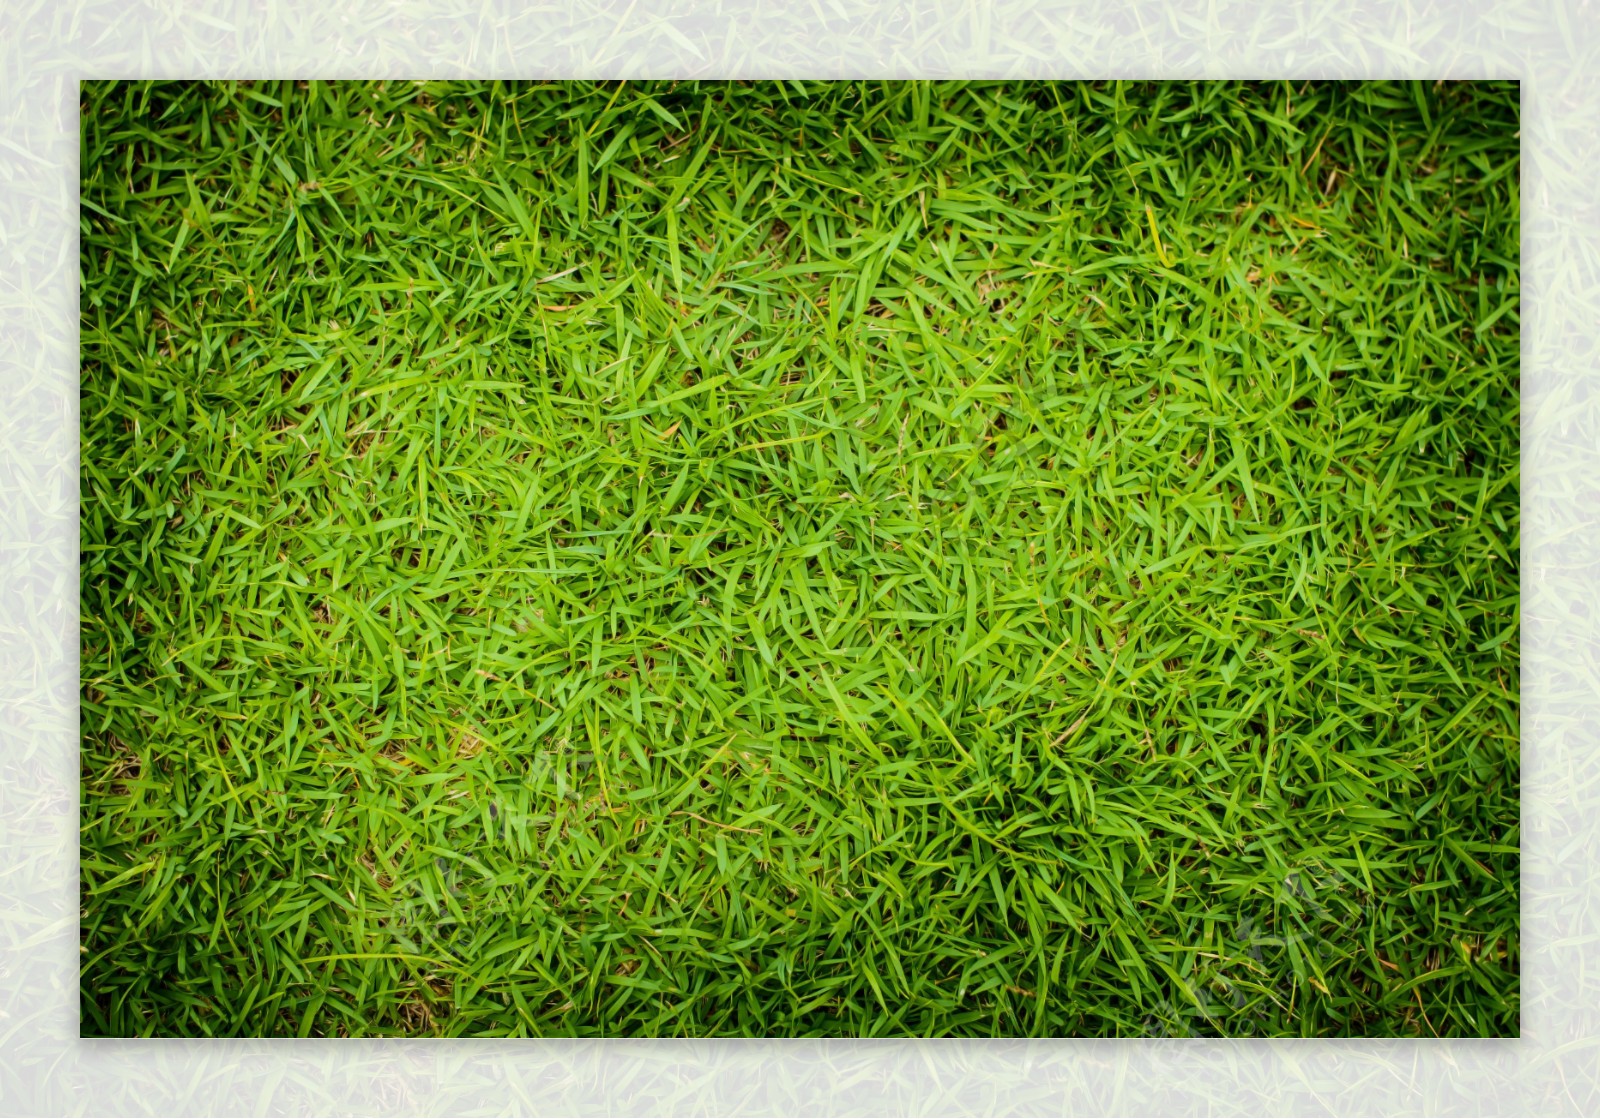 绿色草坪高清图片素材